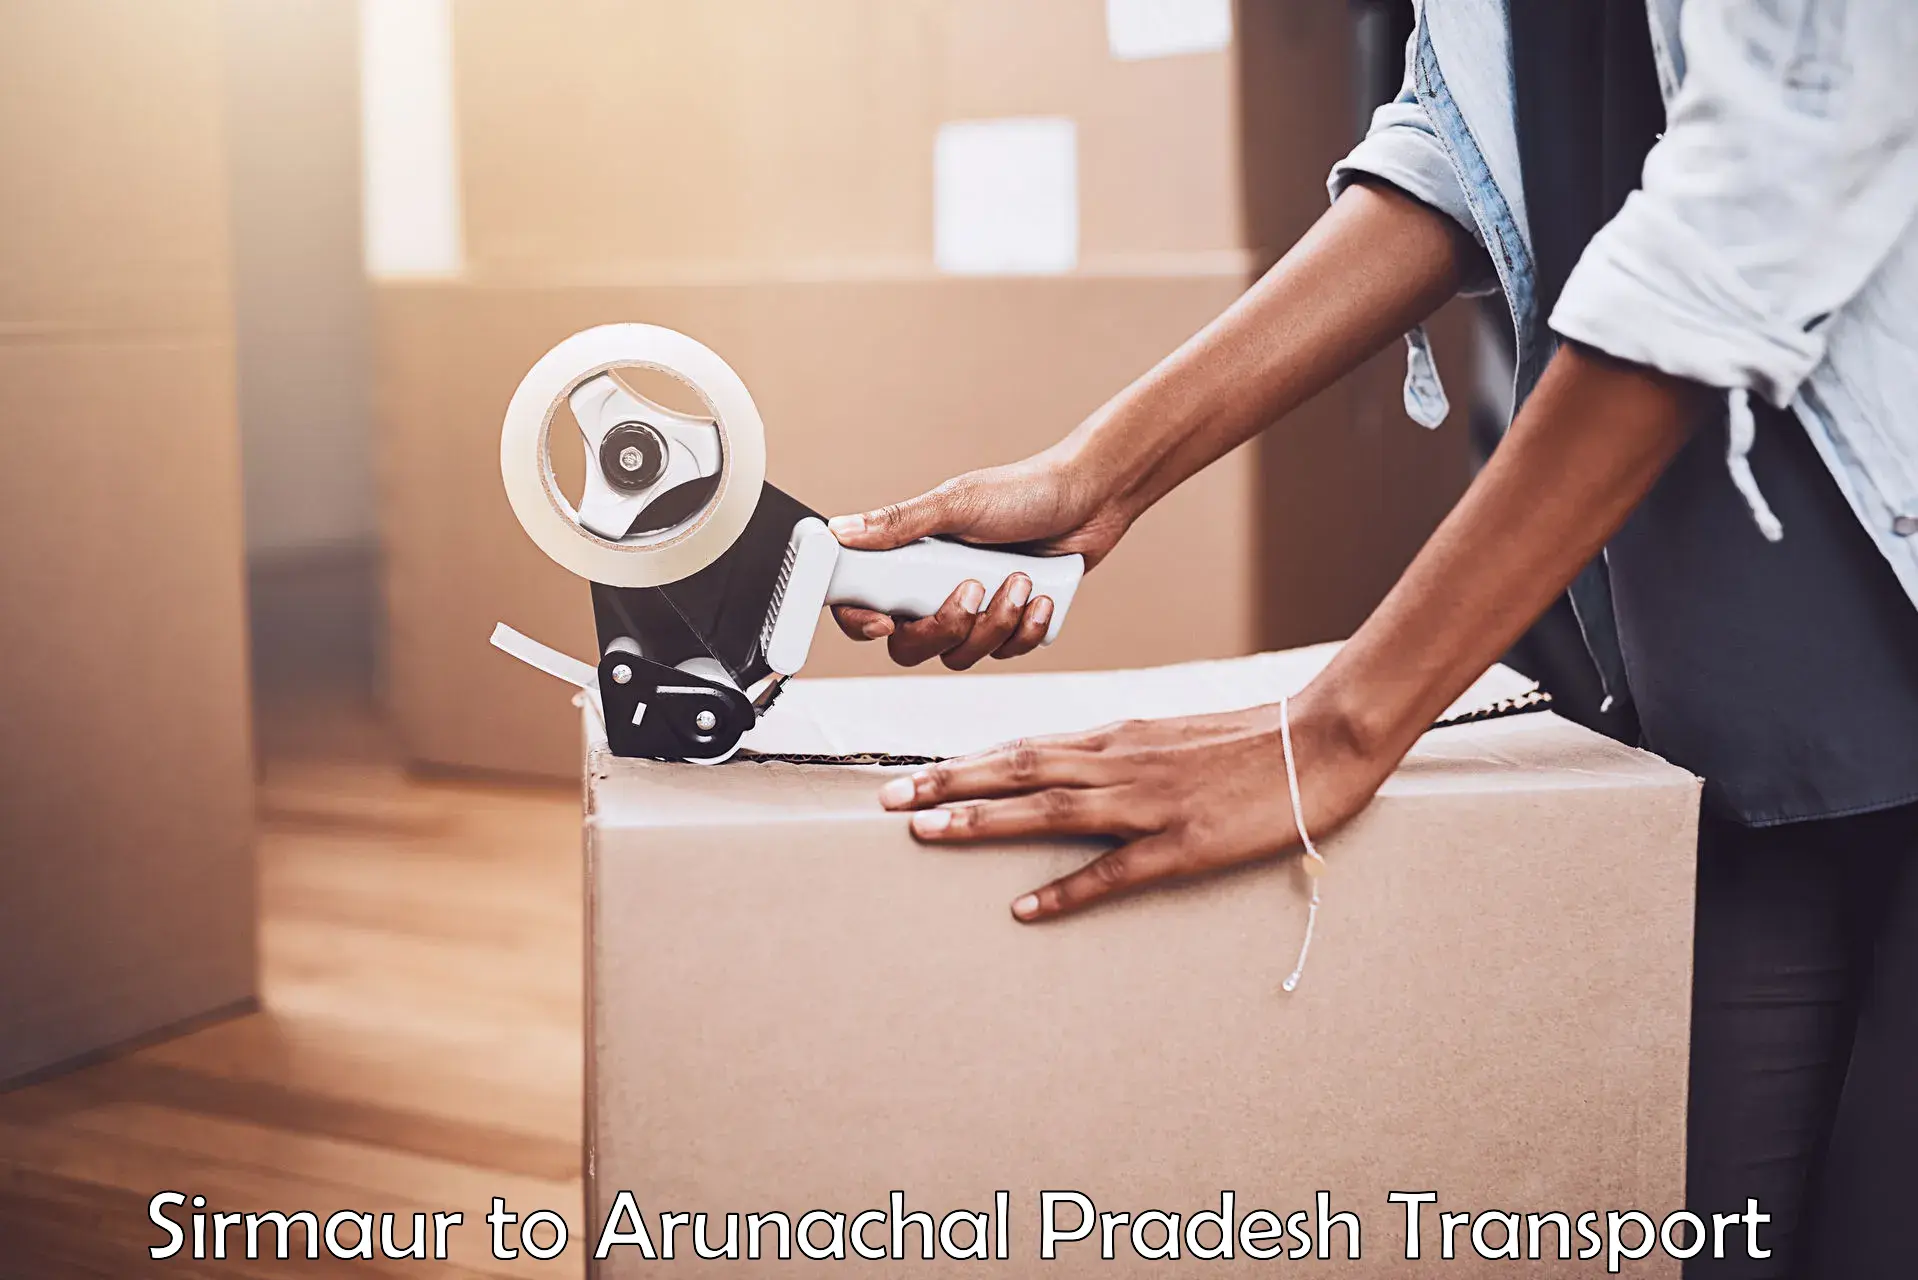 Delivery service Sirmaur to Arunachal Pradesh